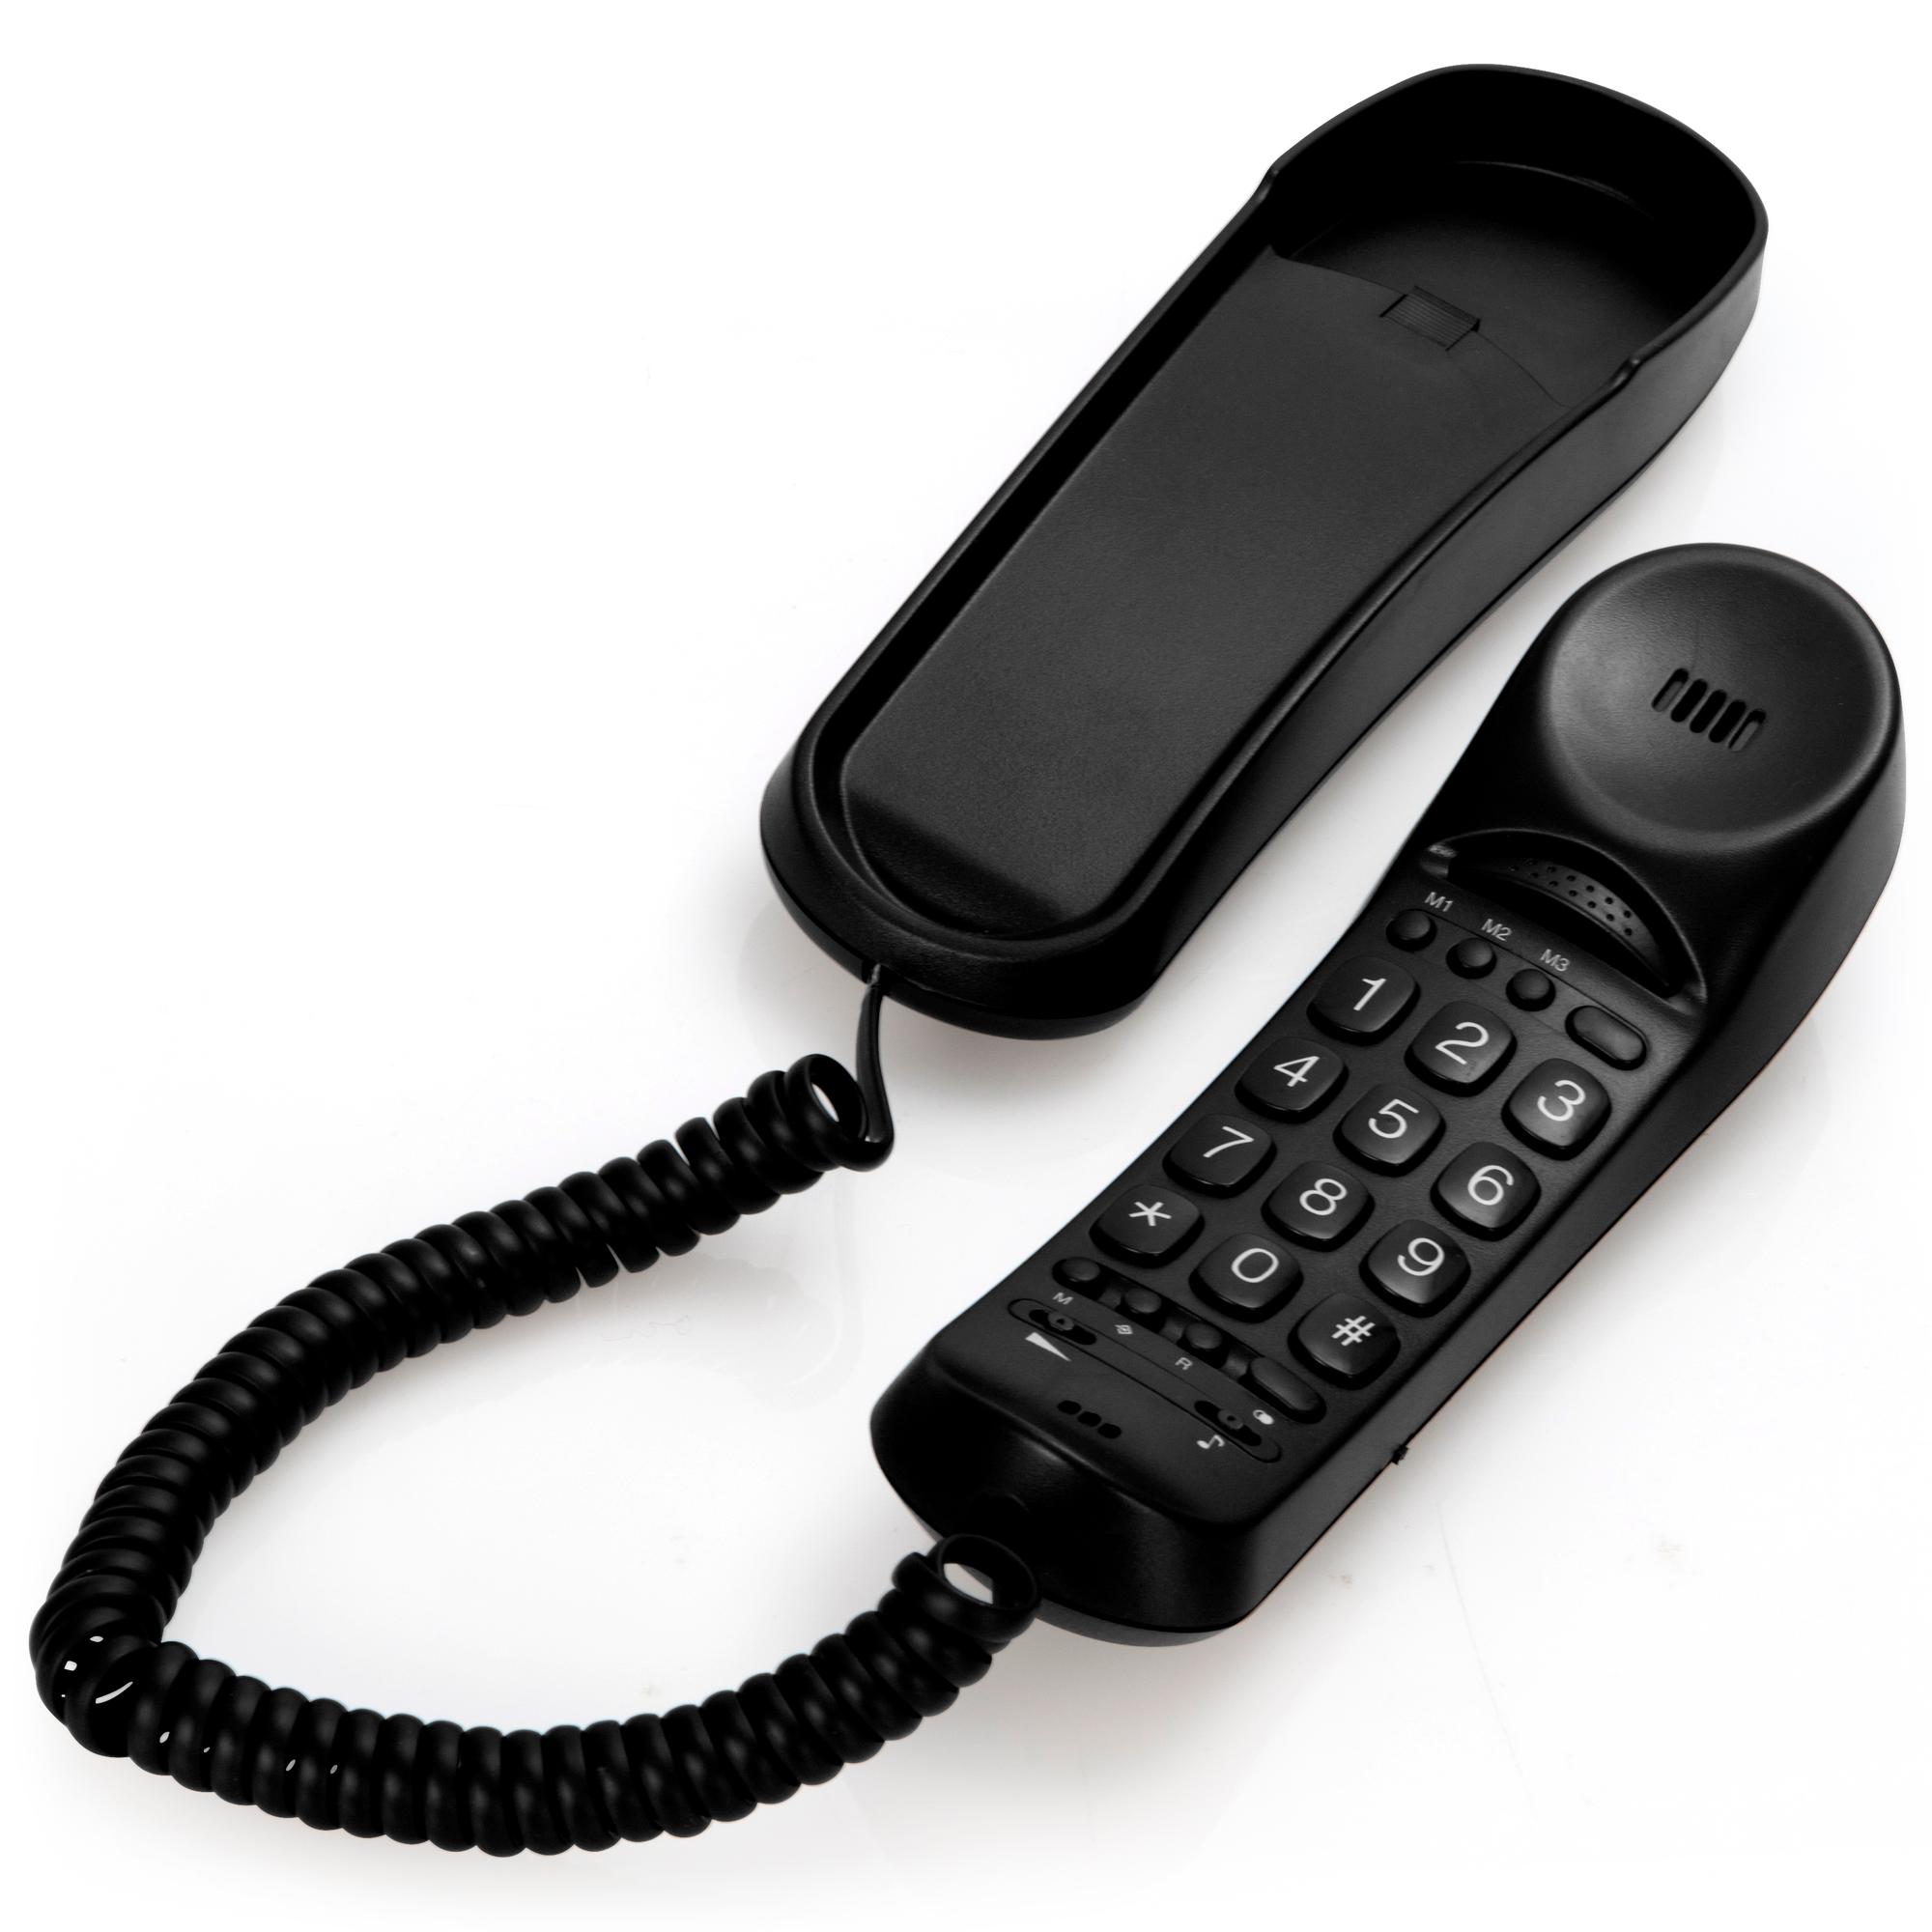 schnurgebundenes FYSIC Seniorentelefon Klingellampe und Tonverstärker - kompaktes mit FX-2800